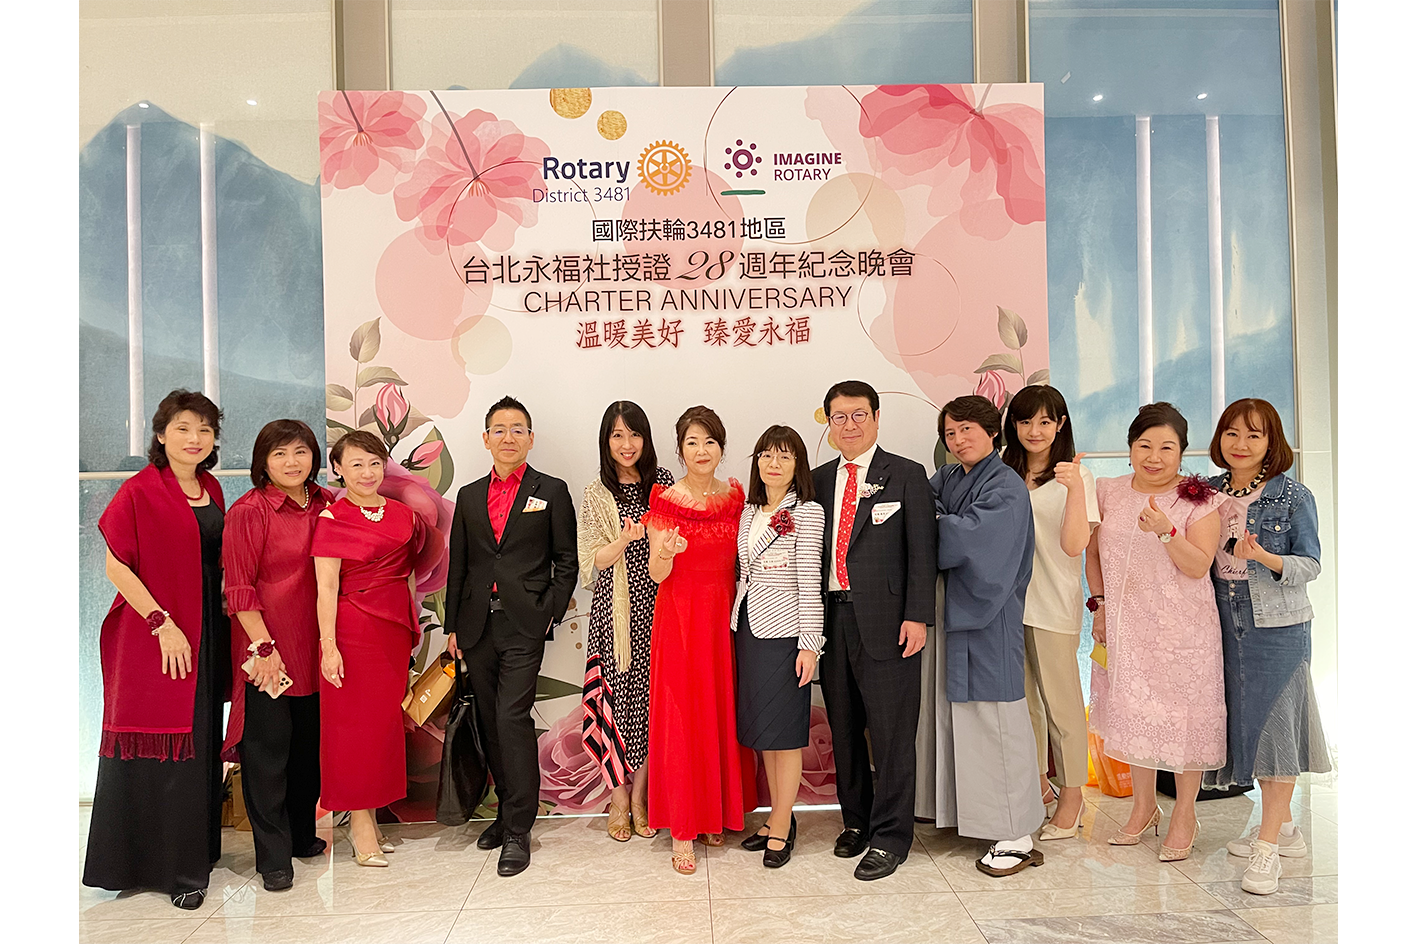 中華民国・台北永福ロータリークラブ28周年記念総会への出席